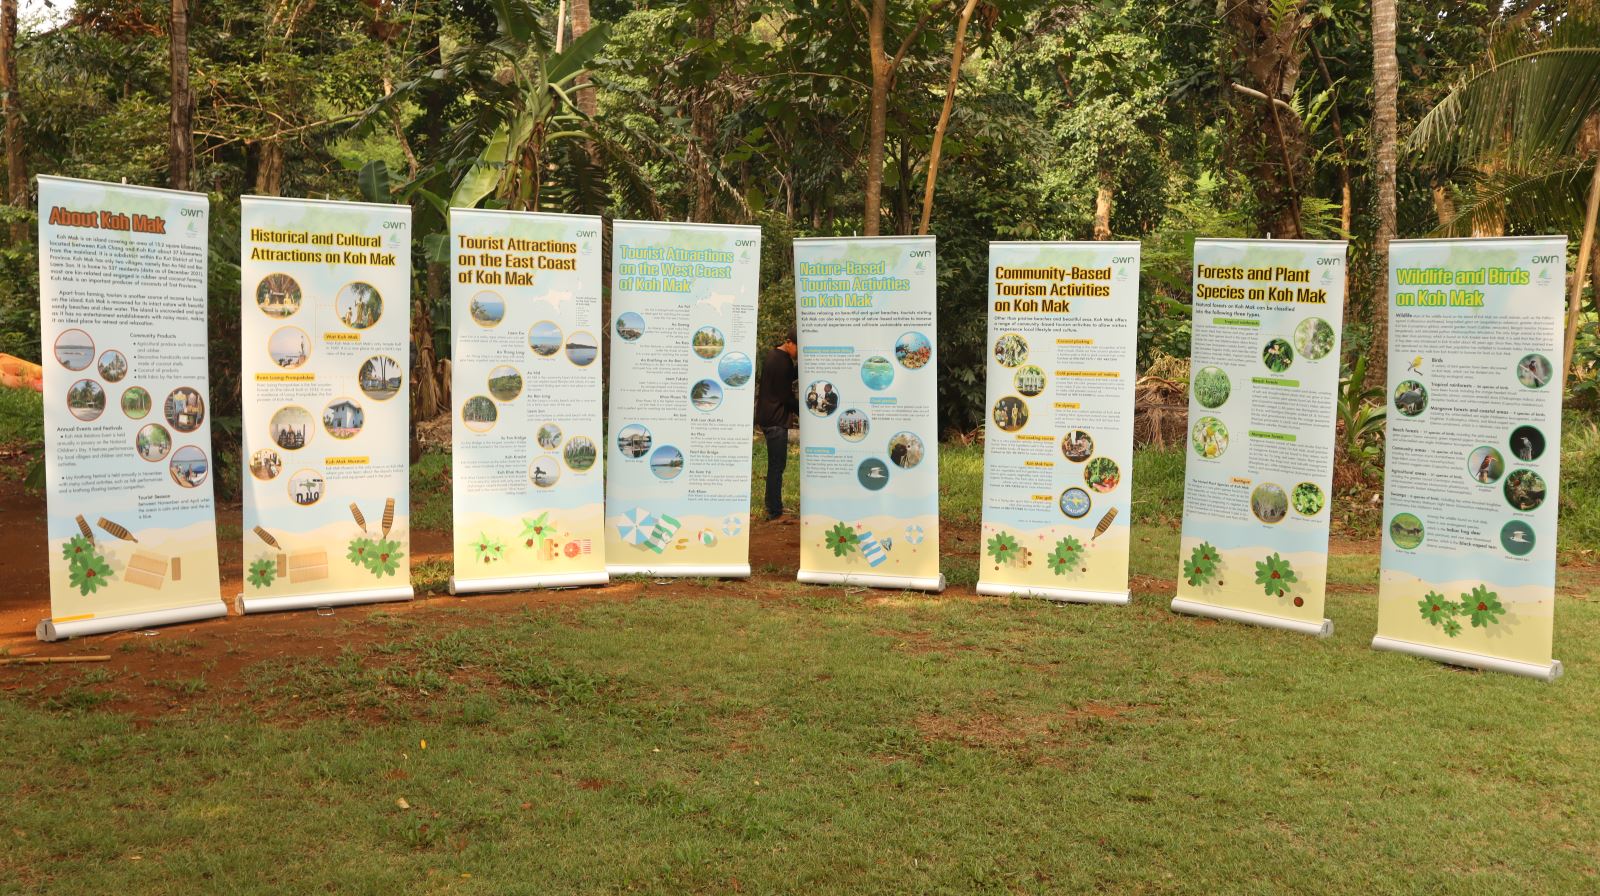 Giới thiệu về các hoạt động du lịch bền vững thân thiện với môi trường tại Koh Mak.